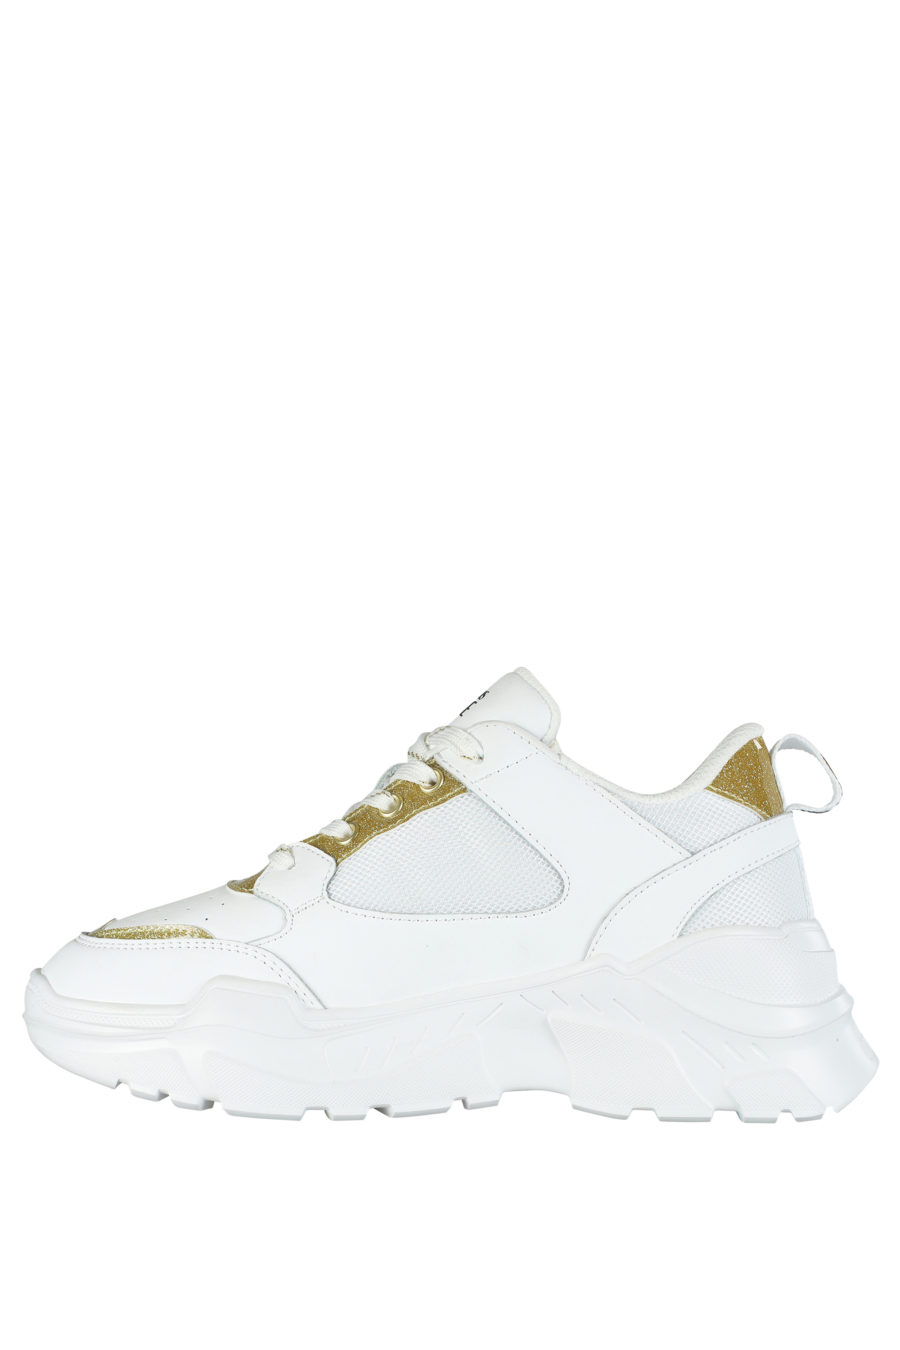 Zapatillas blancas con detalles dorado "glitter" - IMG 5284